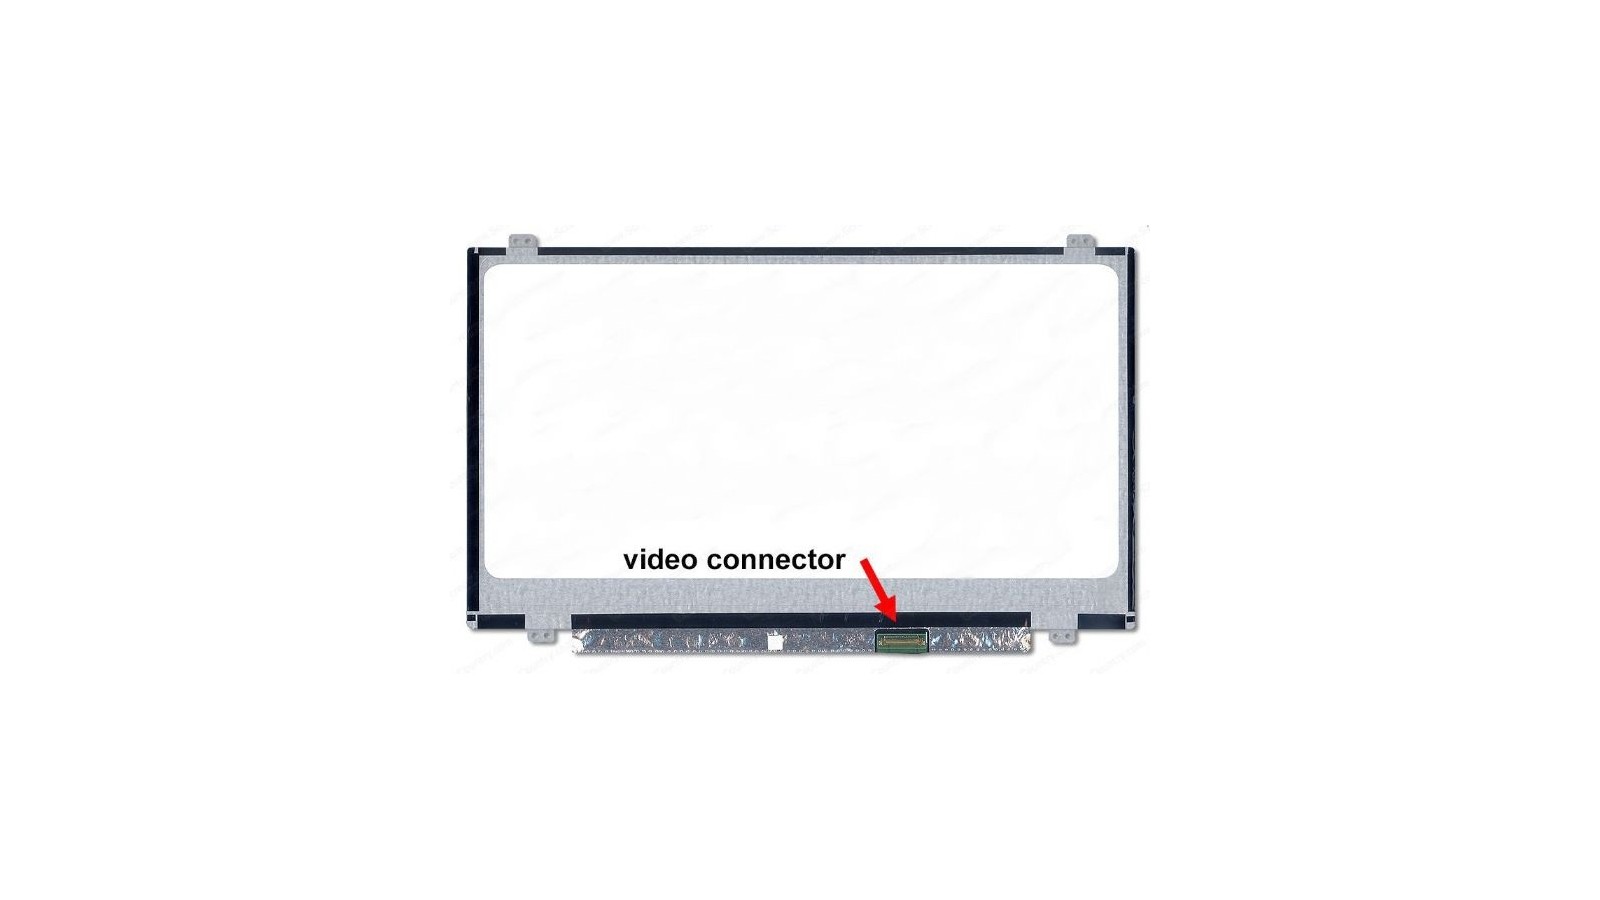 Display LCD Schermo 14.0 LED compatibile con B140XTN03.2